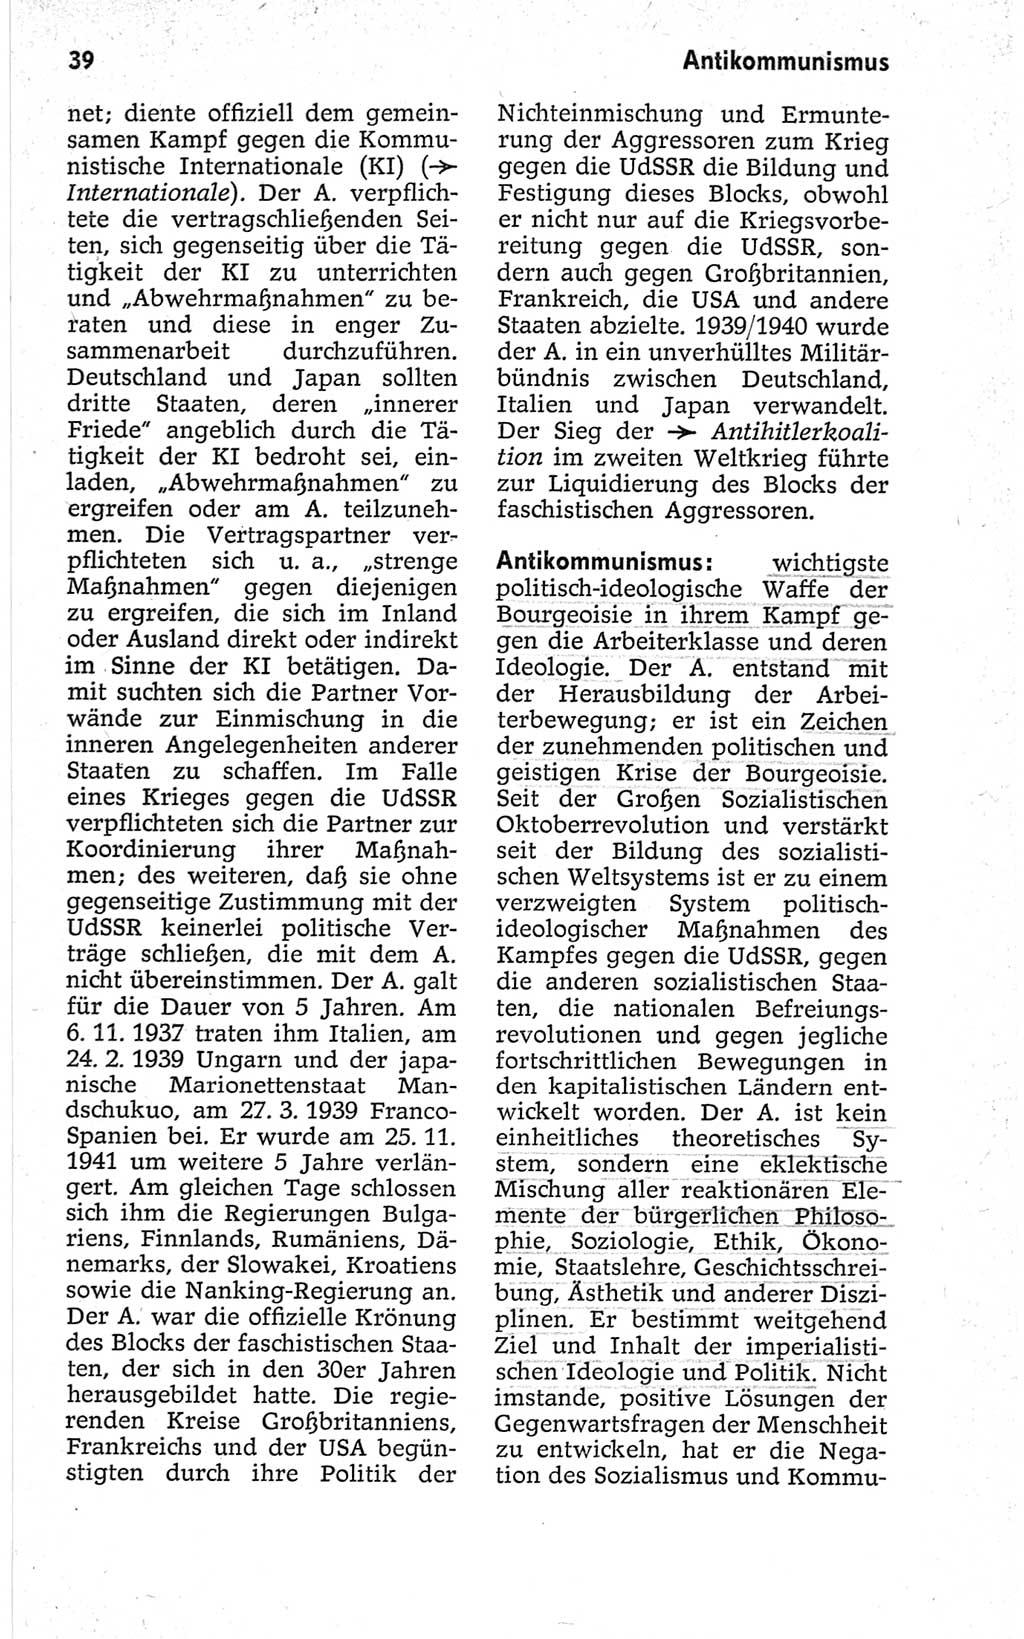 Kleines politisches Wörterbuch [Deutsche Demokratische Republik (DDR)] 1967, Seite 39 (Kl. pol. Wb. DDR 1967, S. 39)